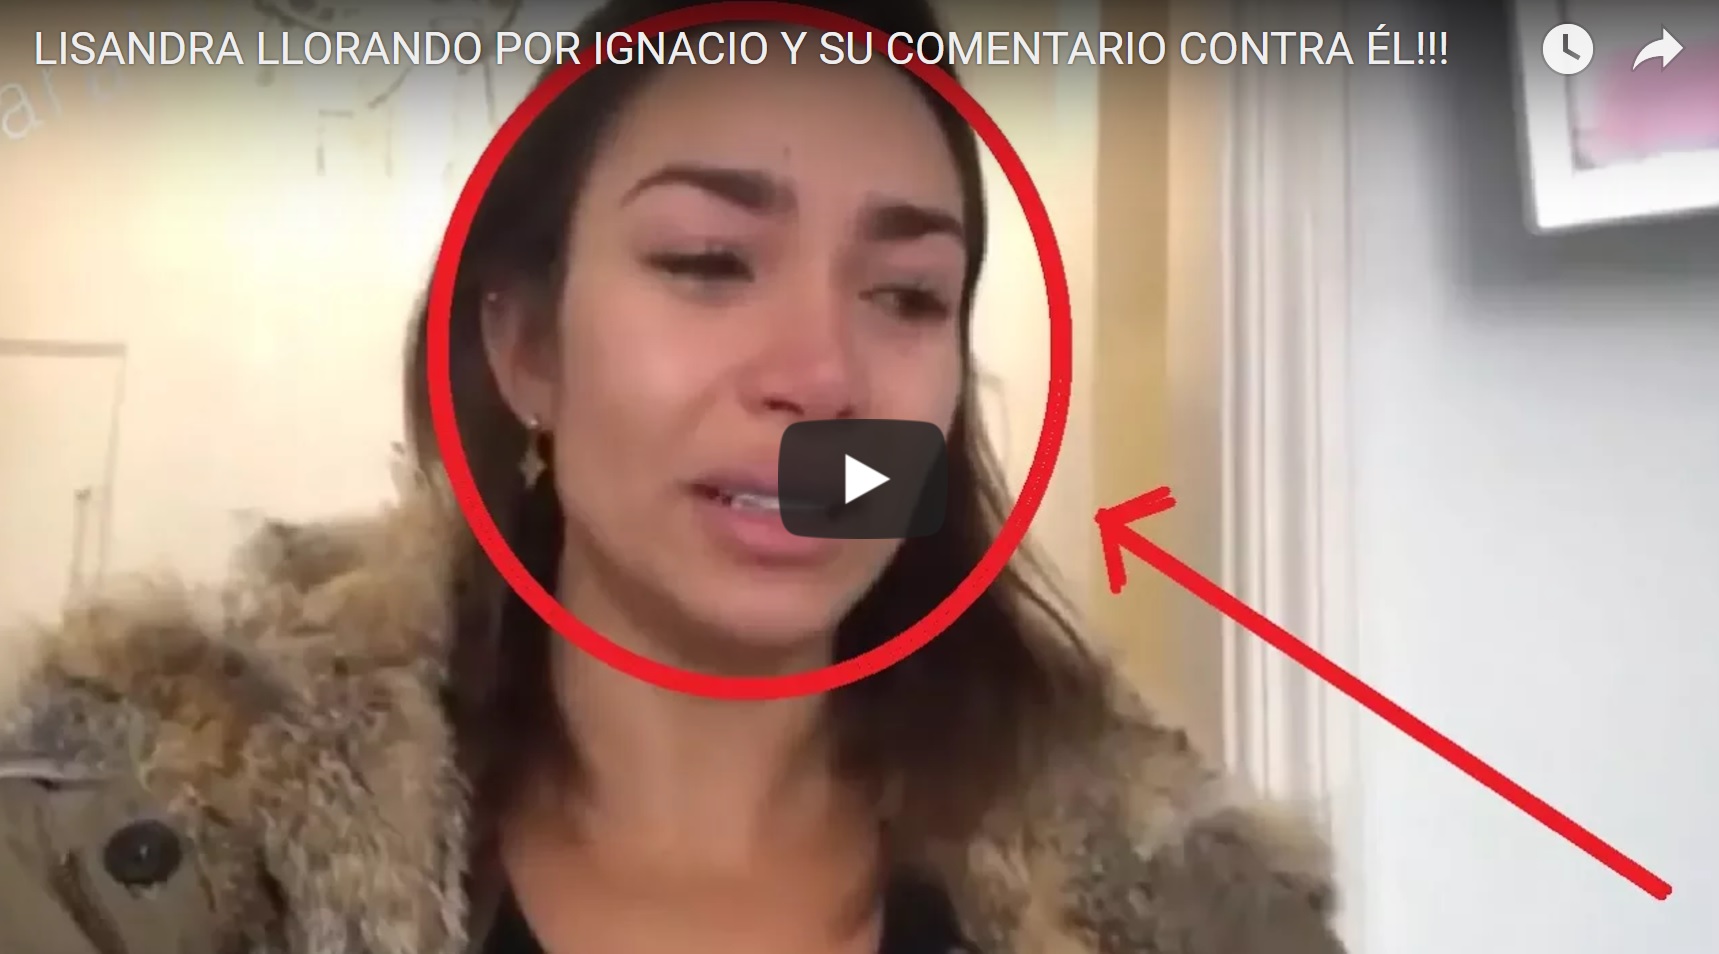 Filtran video donde Lisandra Silva aparece llorando tras desafortunados dichos hacia Ignacio Lastra